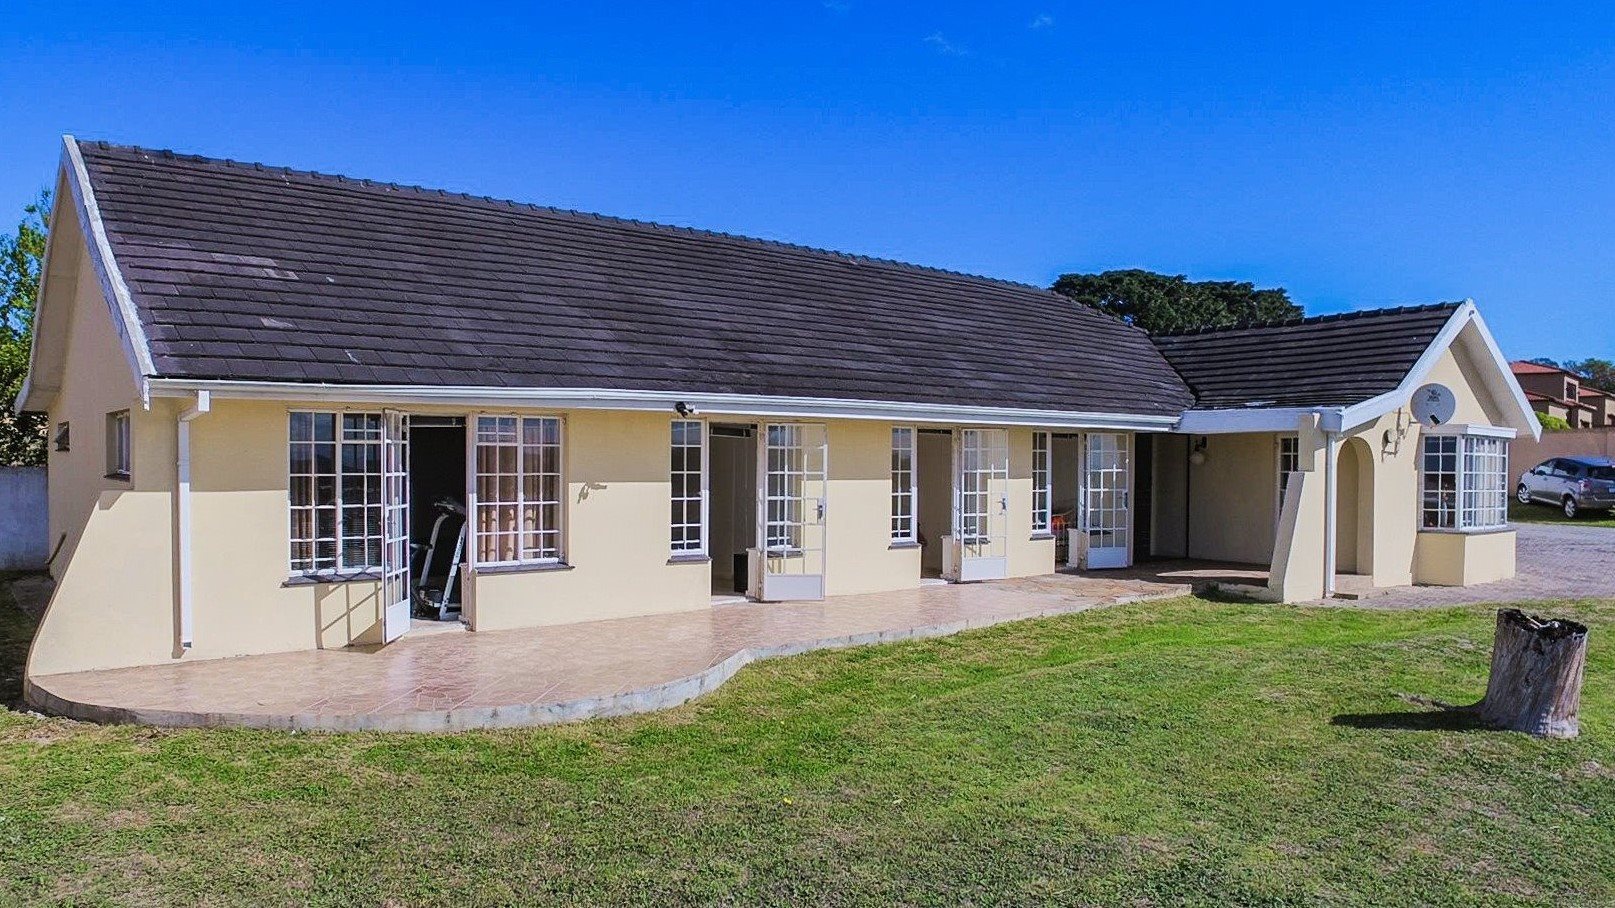 Property Port  Elizabeth  Houses  For Sale  Port  Elizabeth  